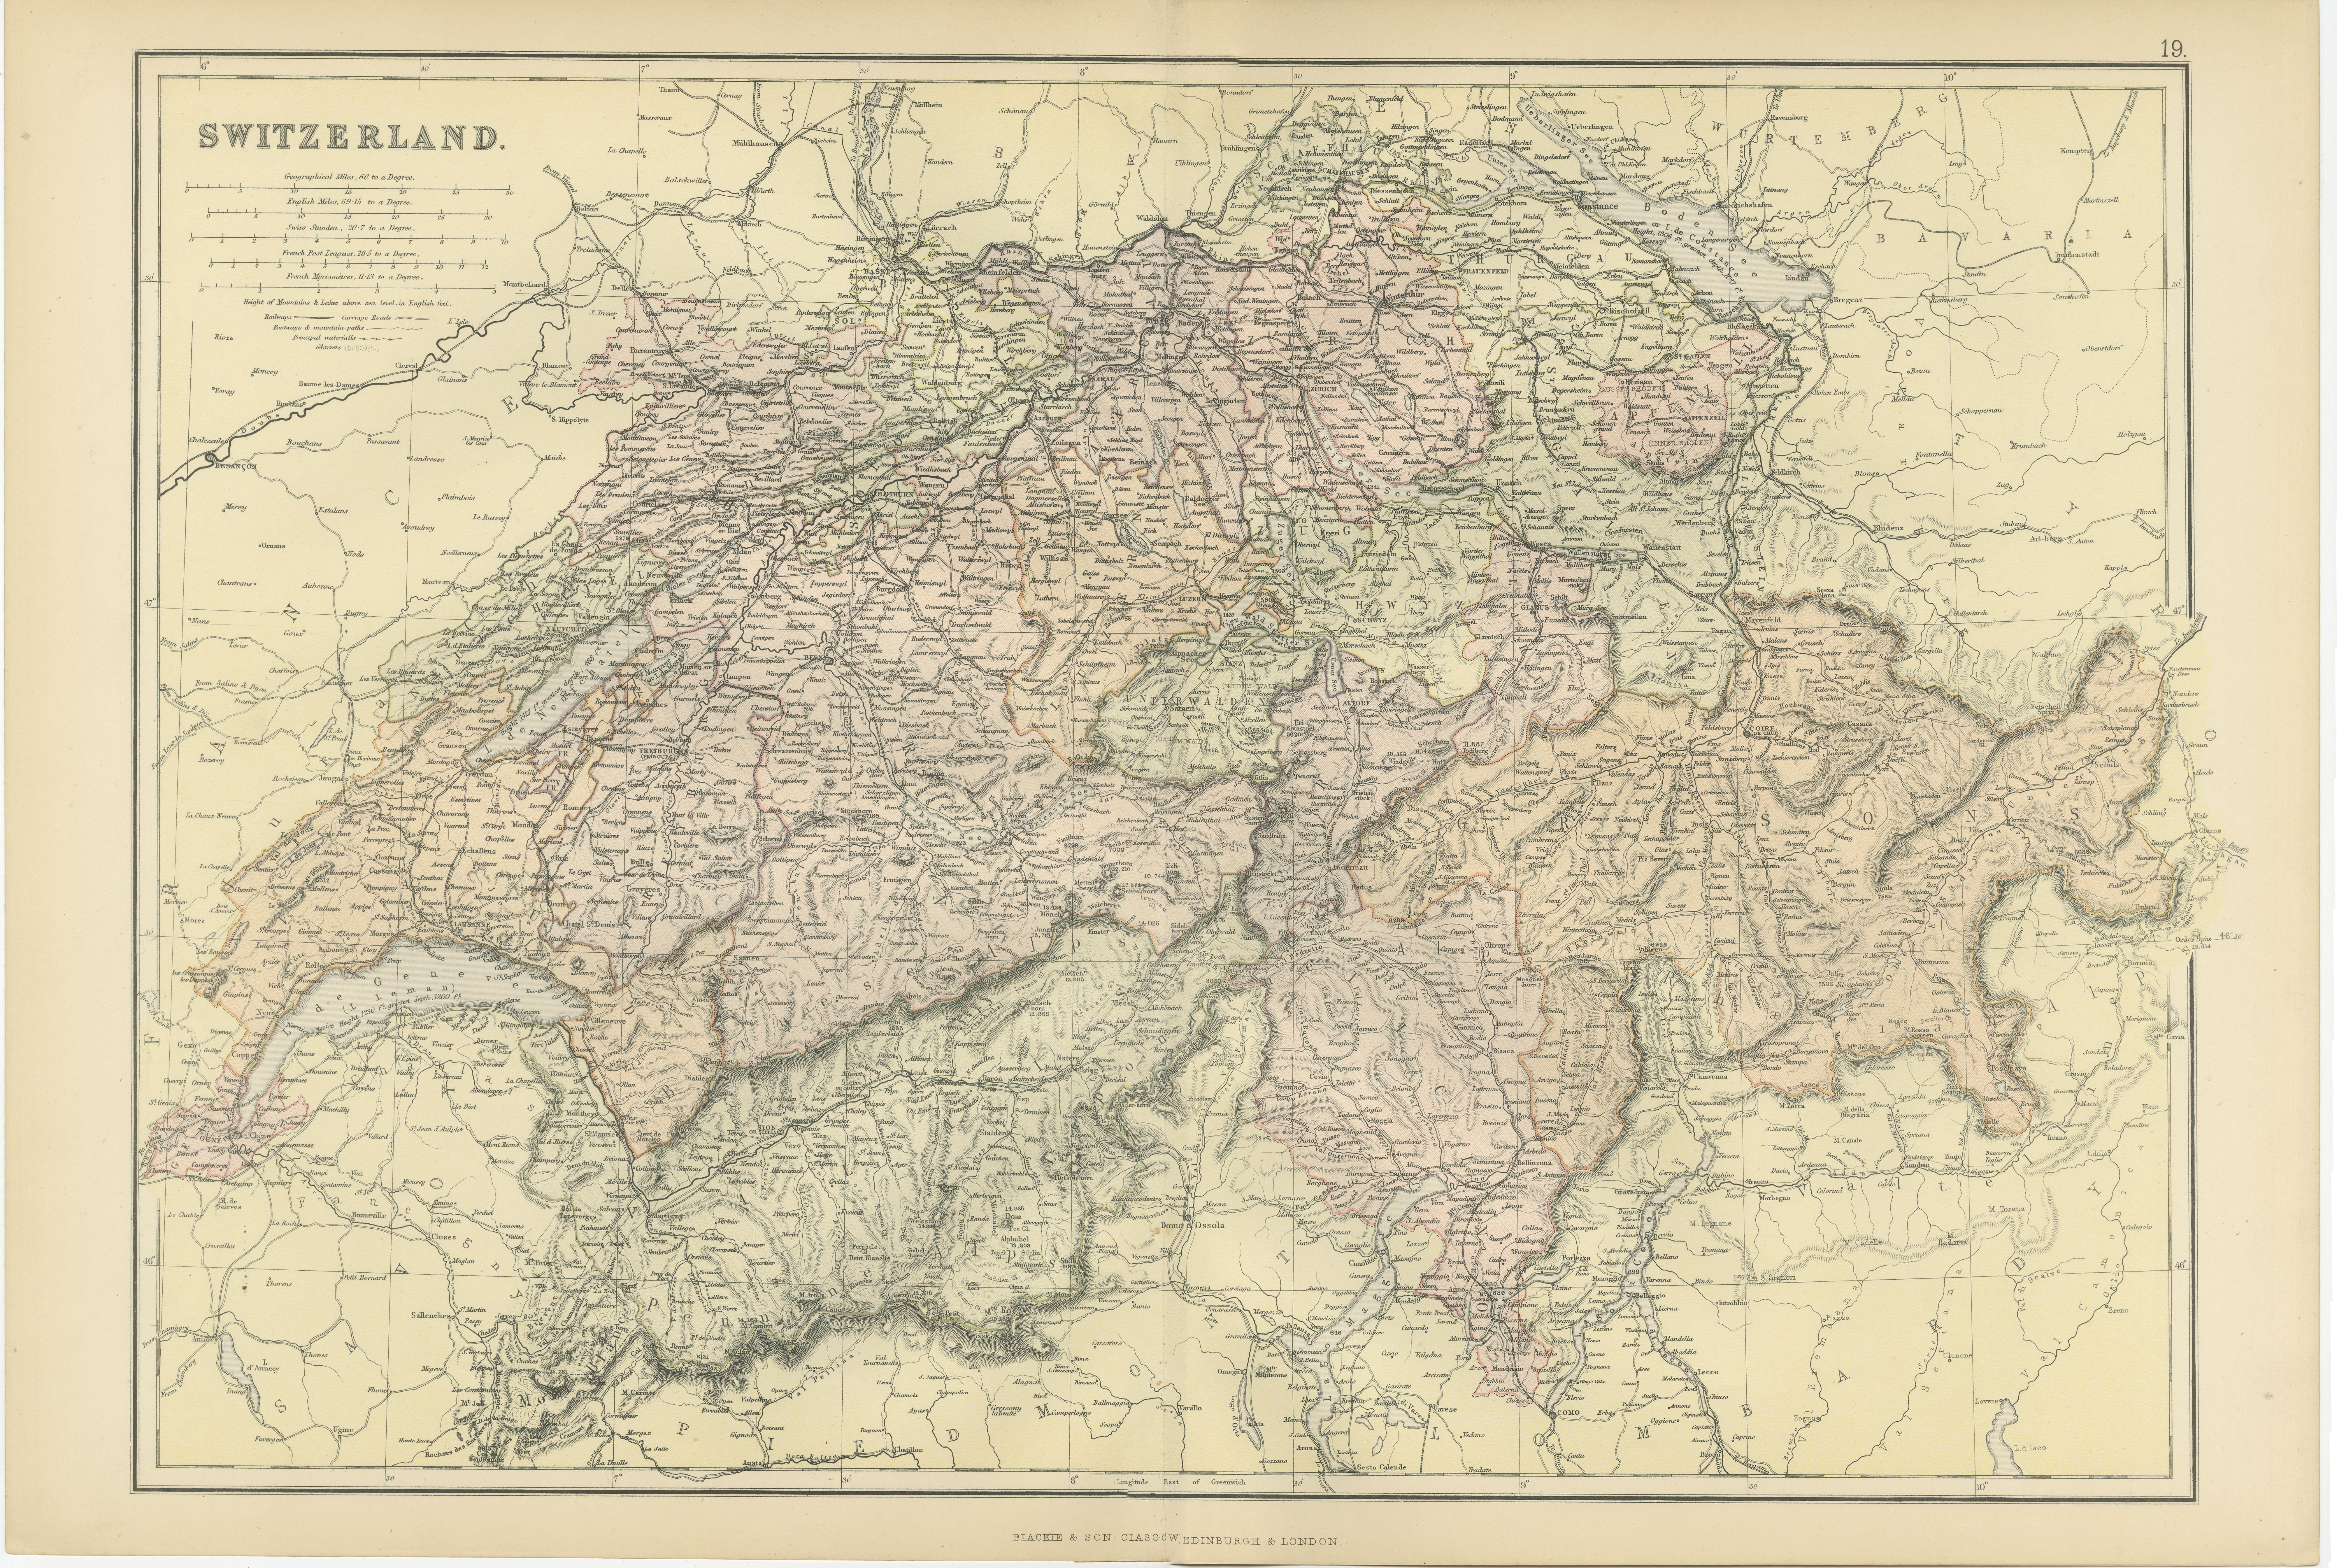 Paper Original Antique Map of Switzerland, 1882 For Sale